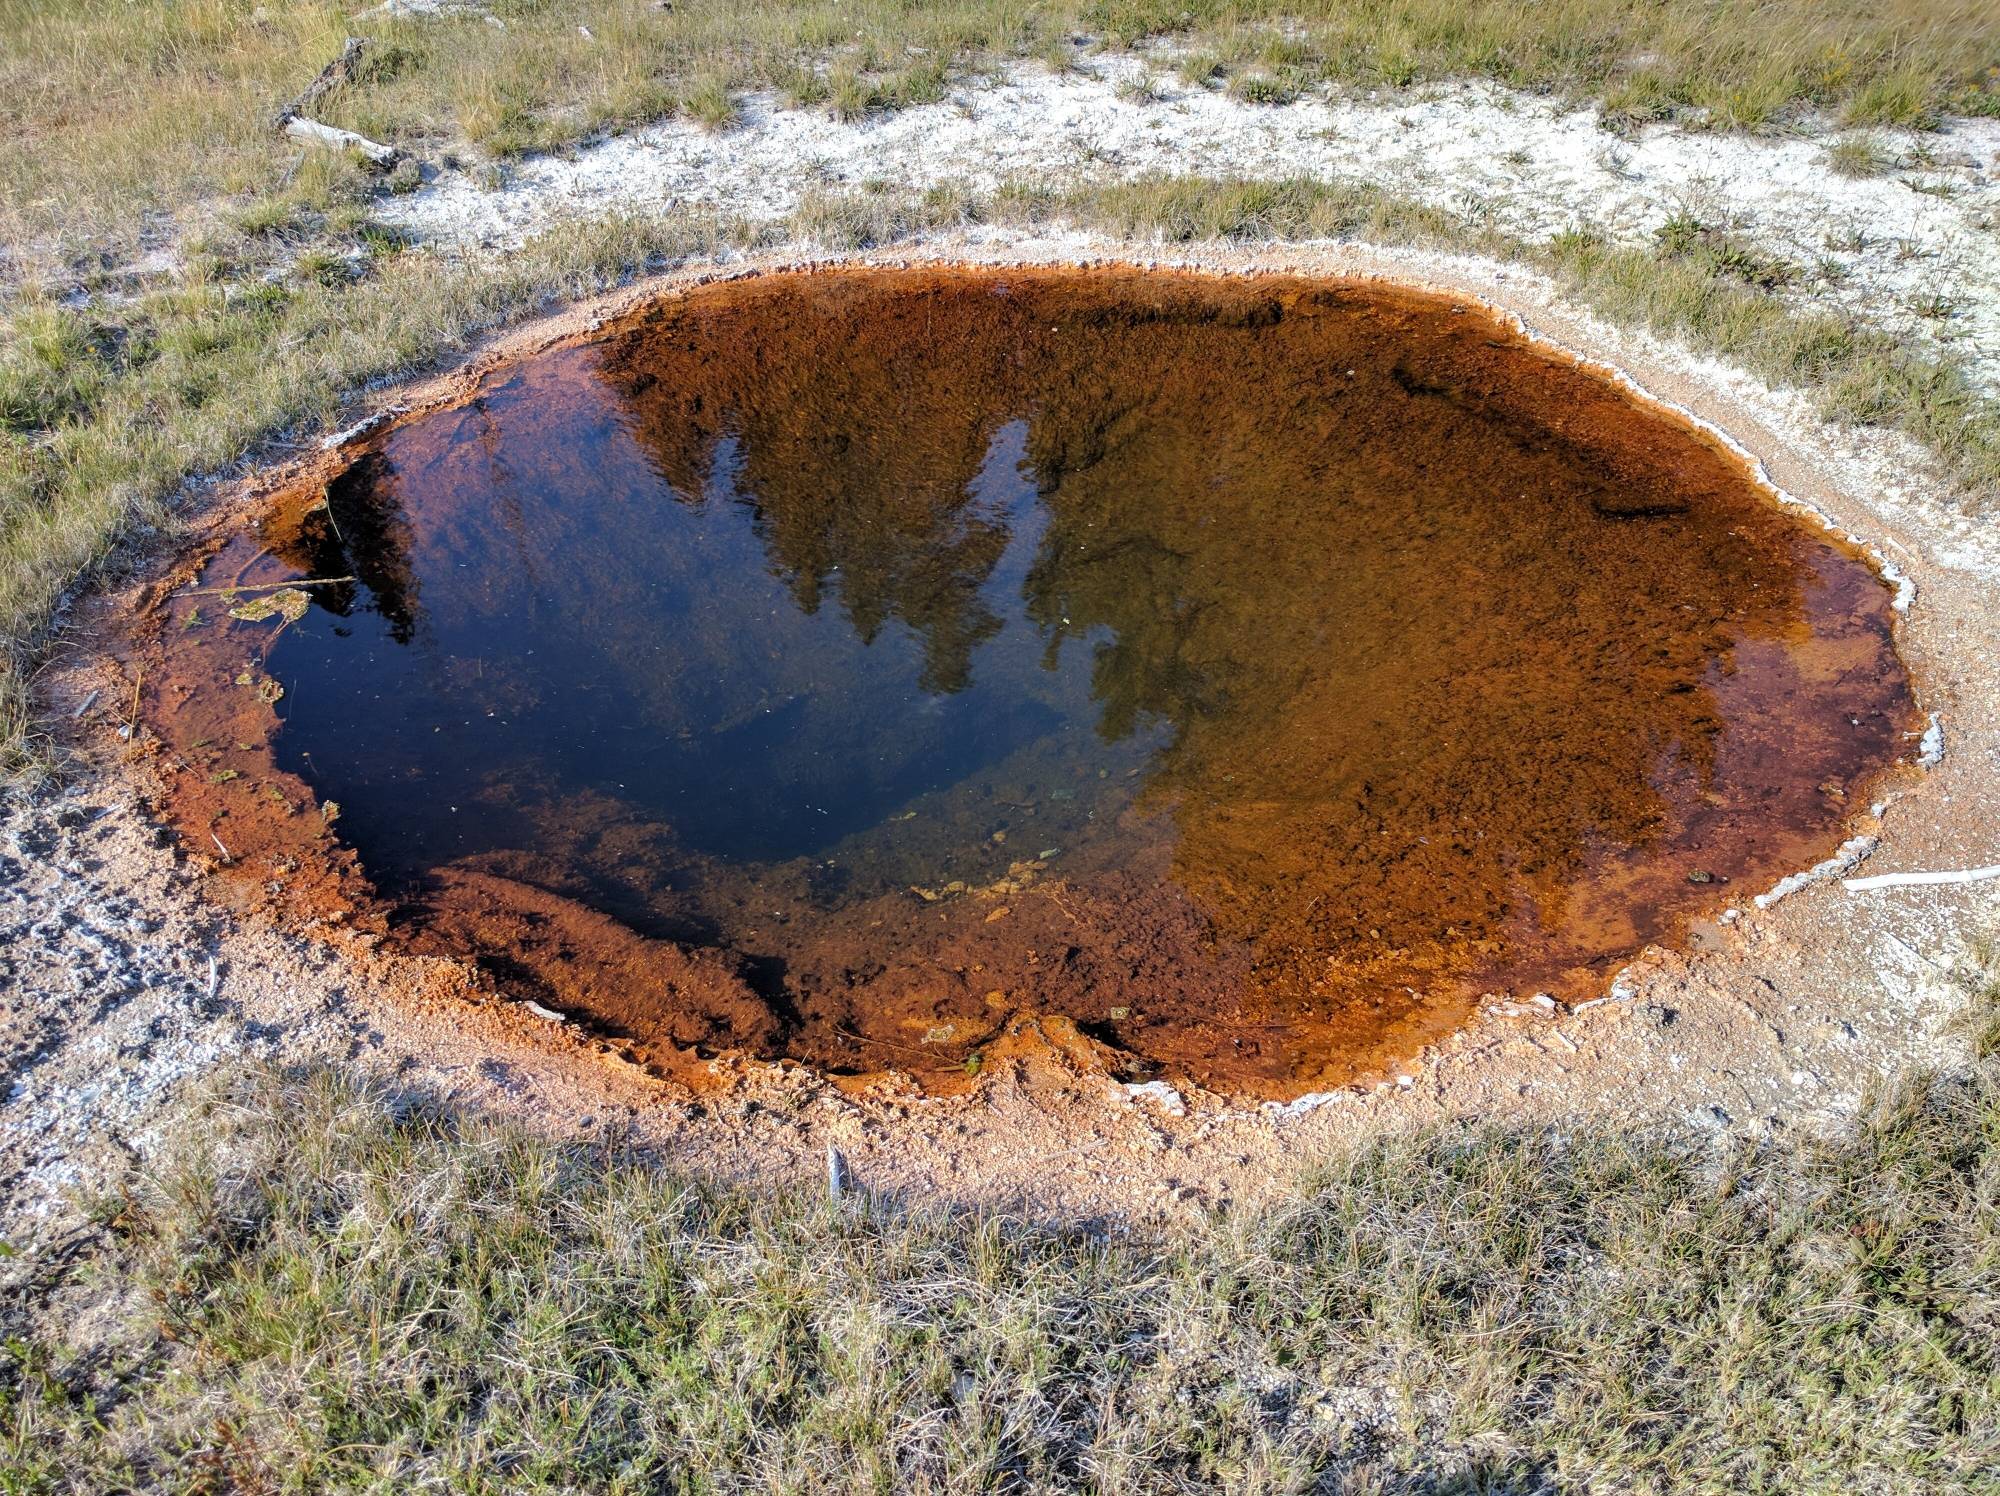 Image: A geothermal pool